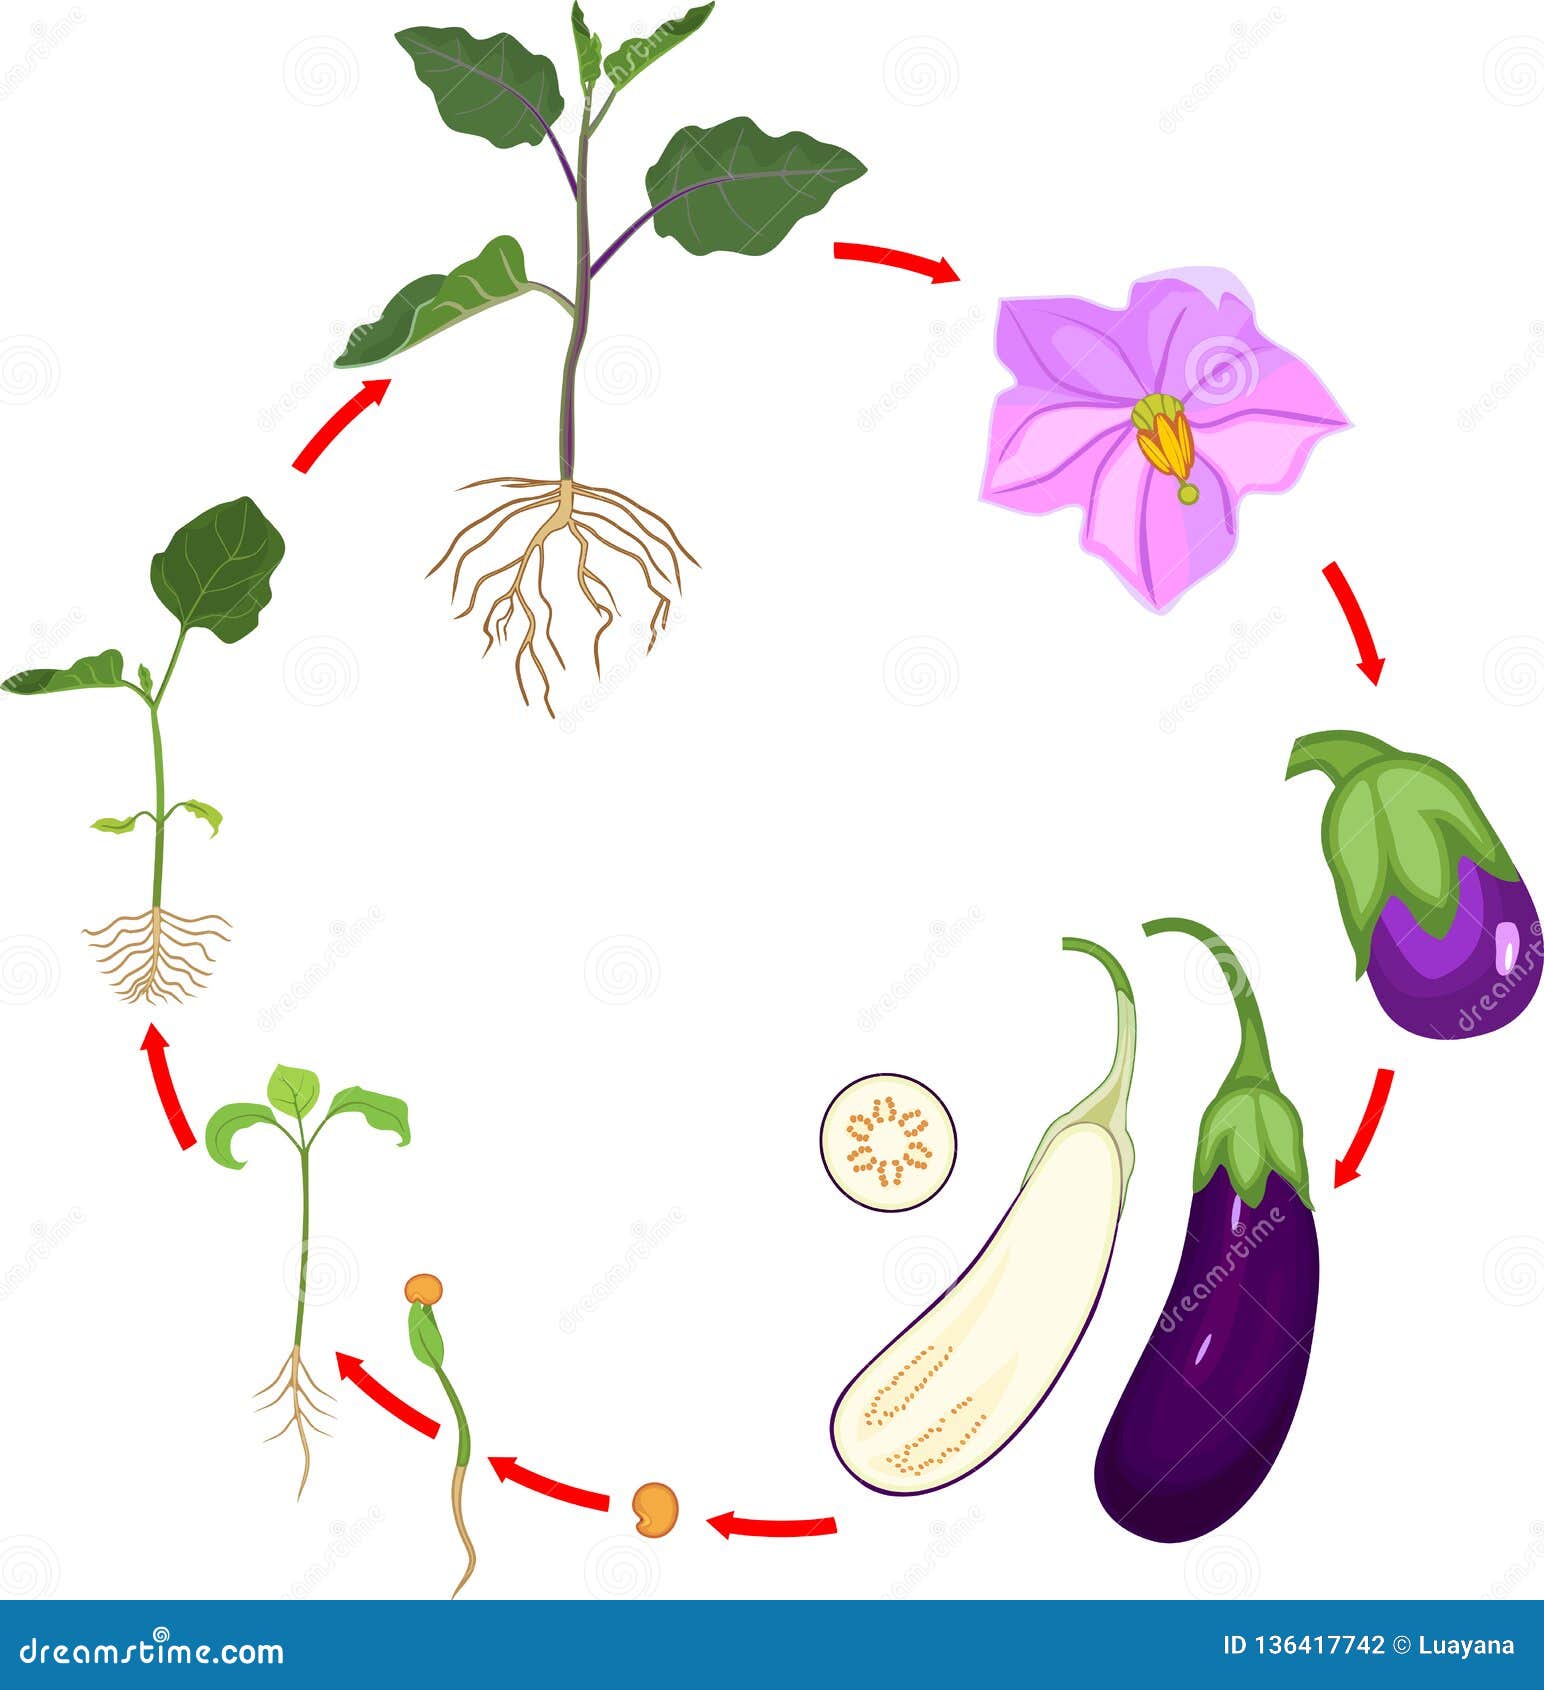 Жизненный цикл овощных растений по маркову. Цикл роста баклажана. Этапы роста овощей для дошкольников. Цикл роста овощей для дошкольников. Этапы роста баклажана.